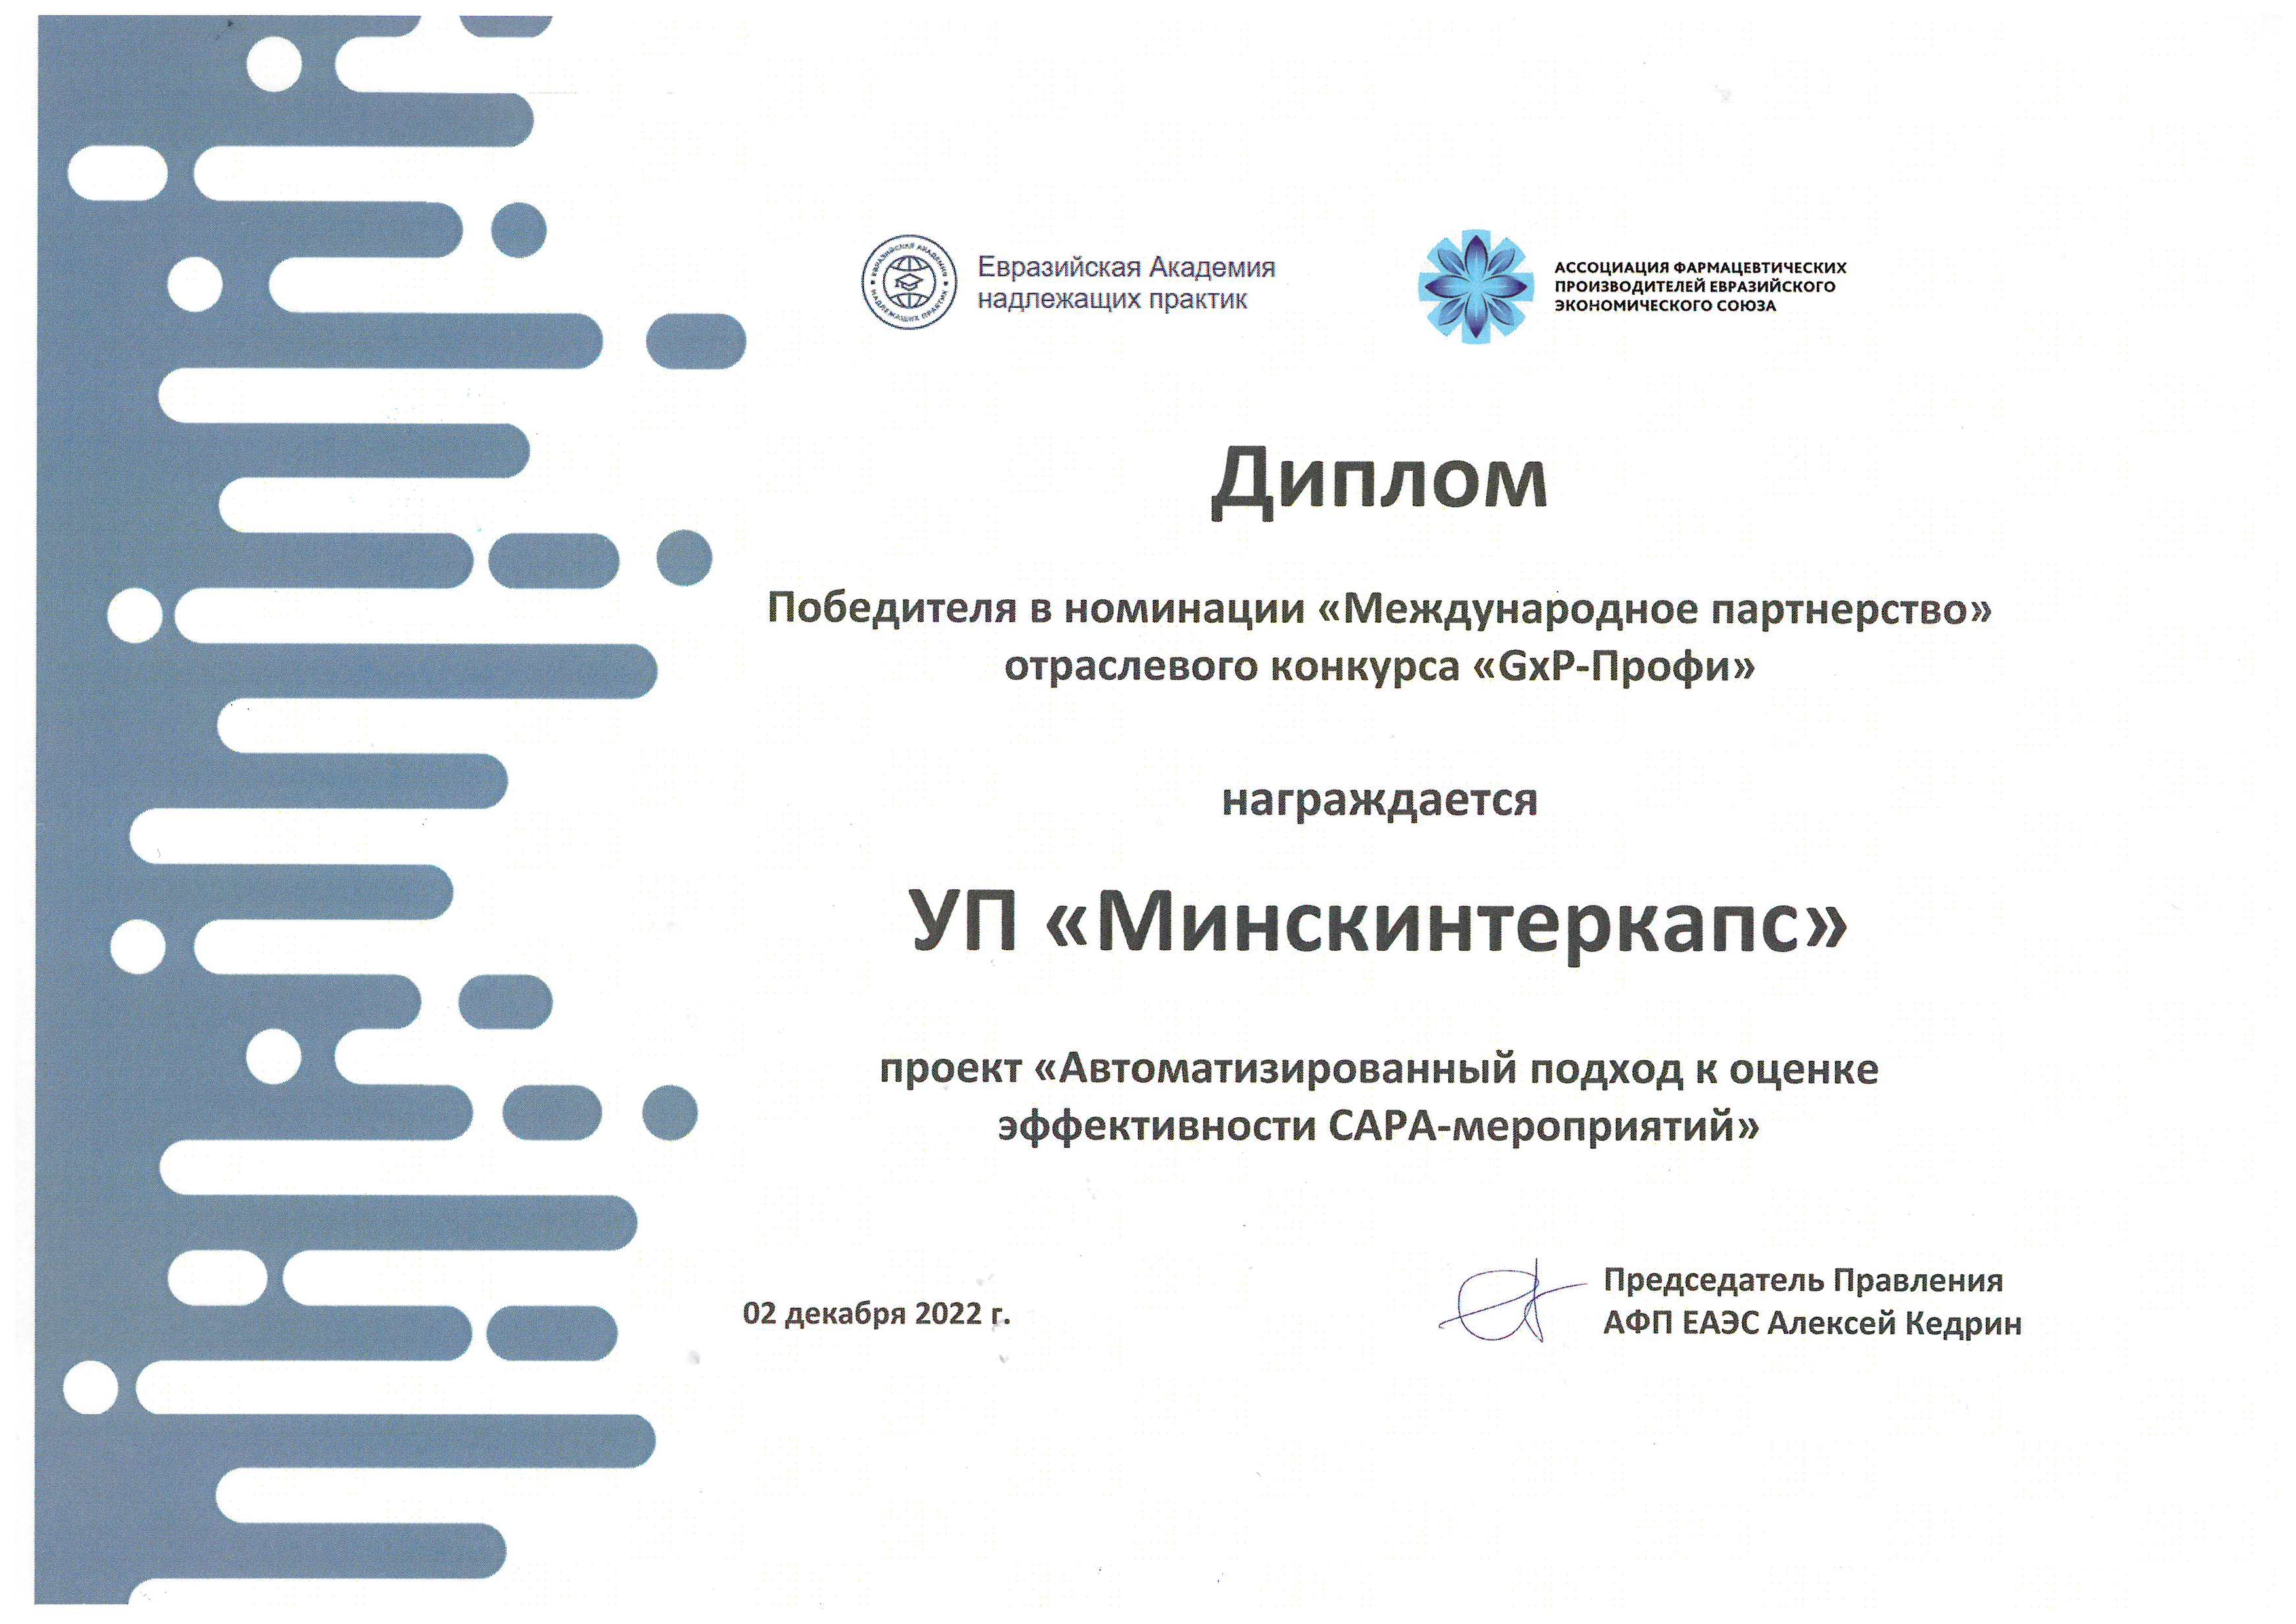 У «Минскинтеркапс» – Диплом победителя в номинации «Международное партнерство отраслевого конкурса “GxP-Профи 2022“»